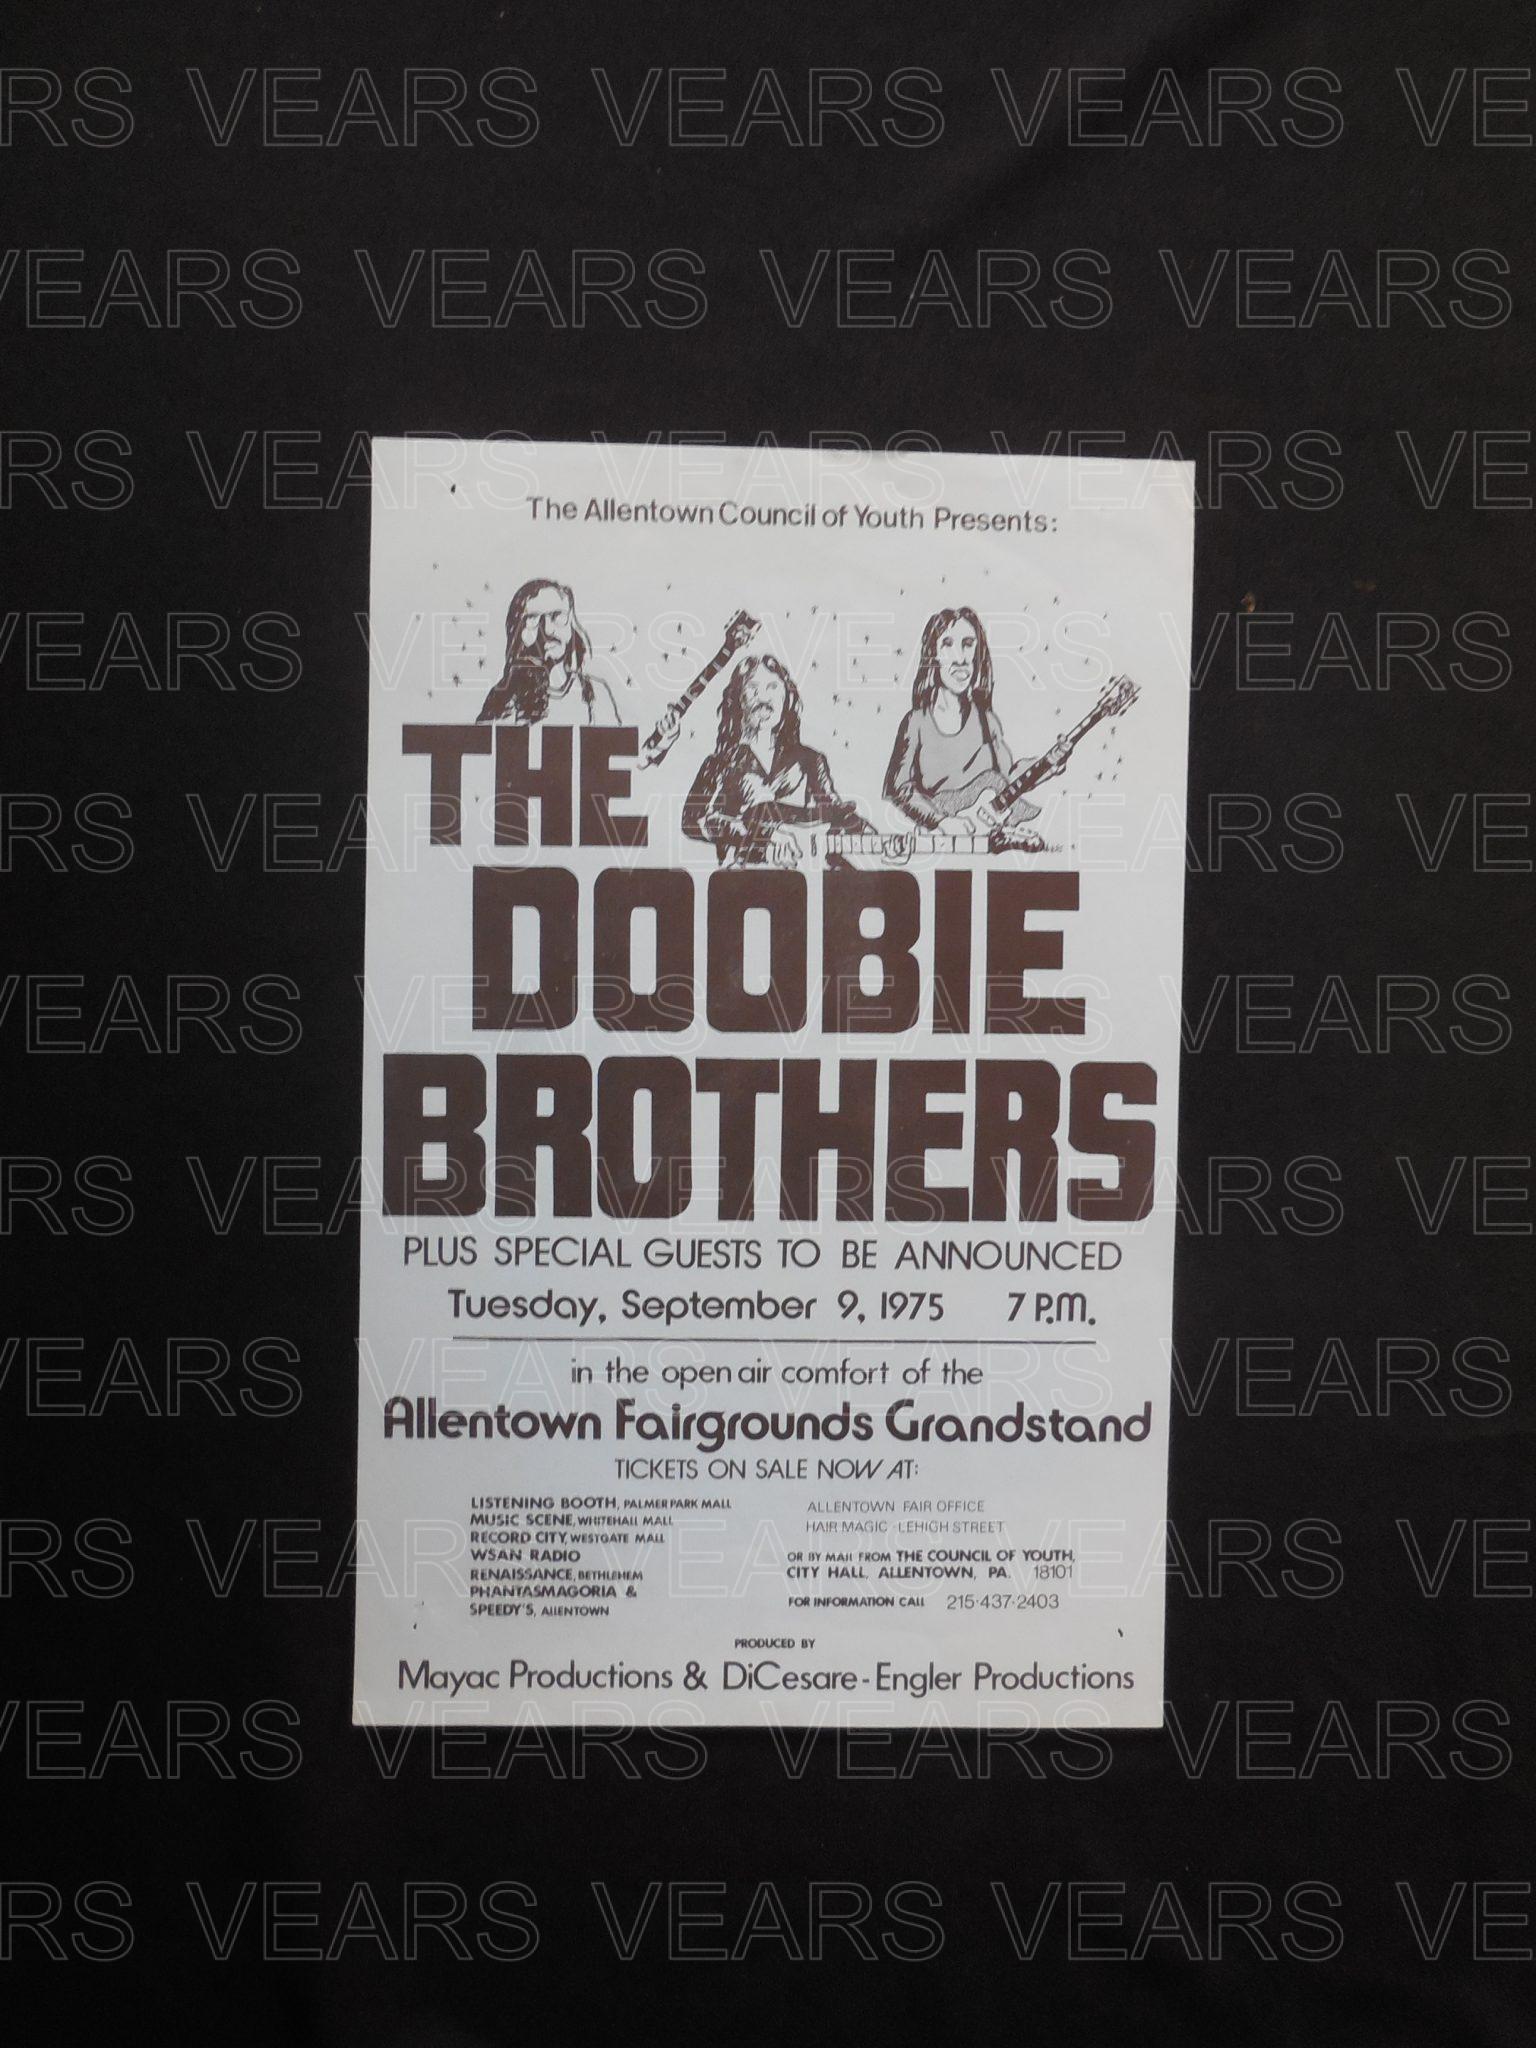 doobie brothers tour 1975